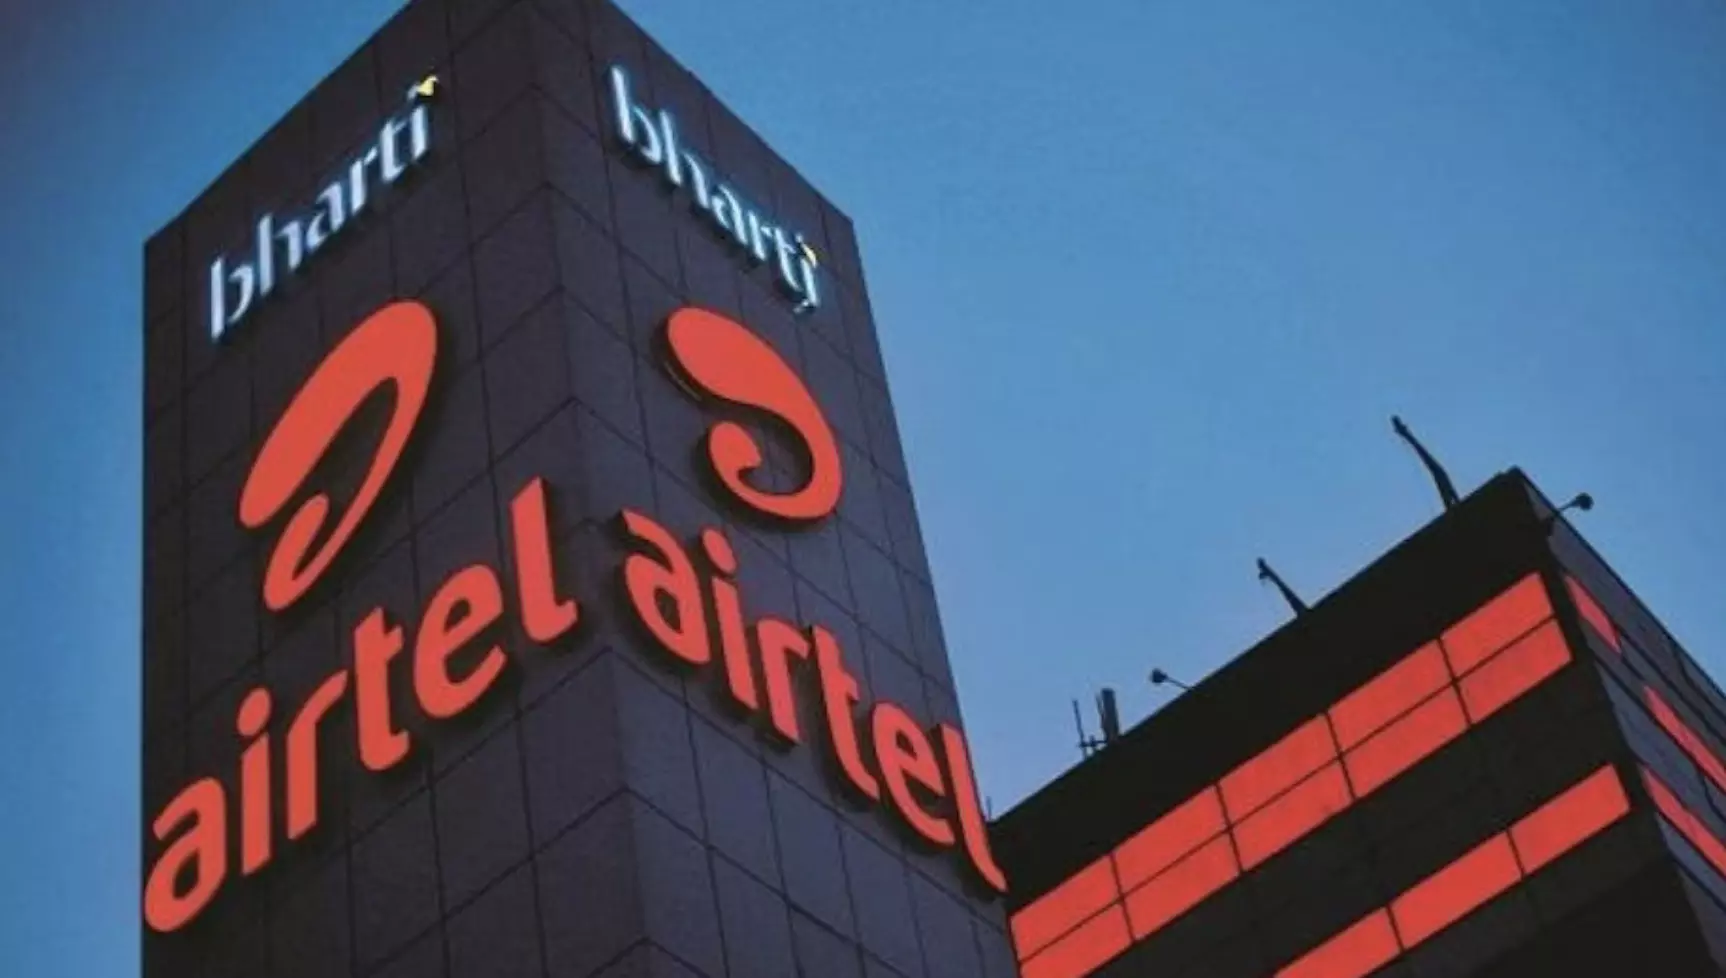 Bharti Hexacom a subsidiary of Airtel gets Sebi nod to launch IPO